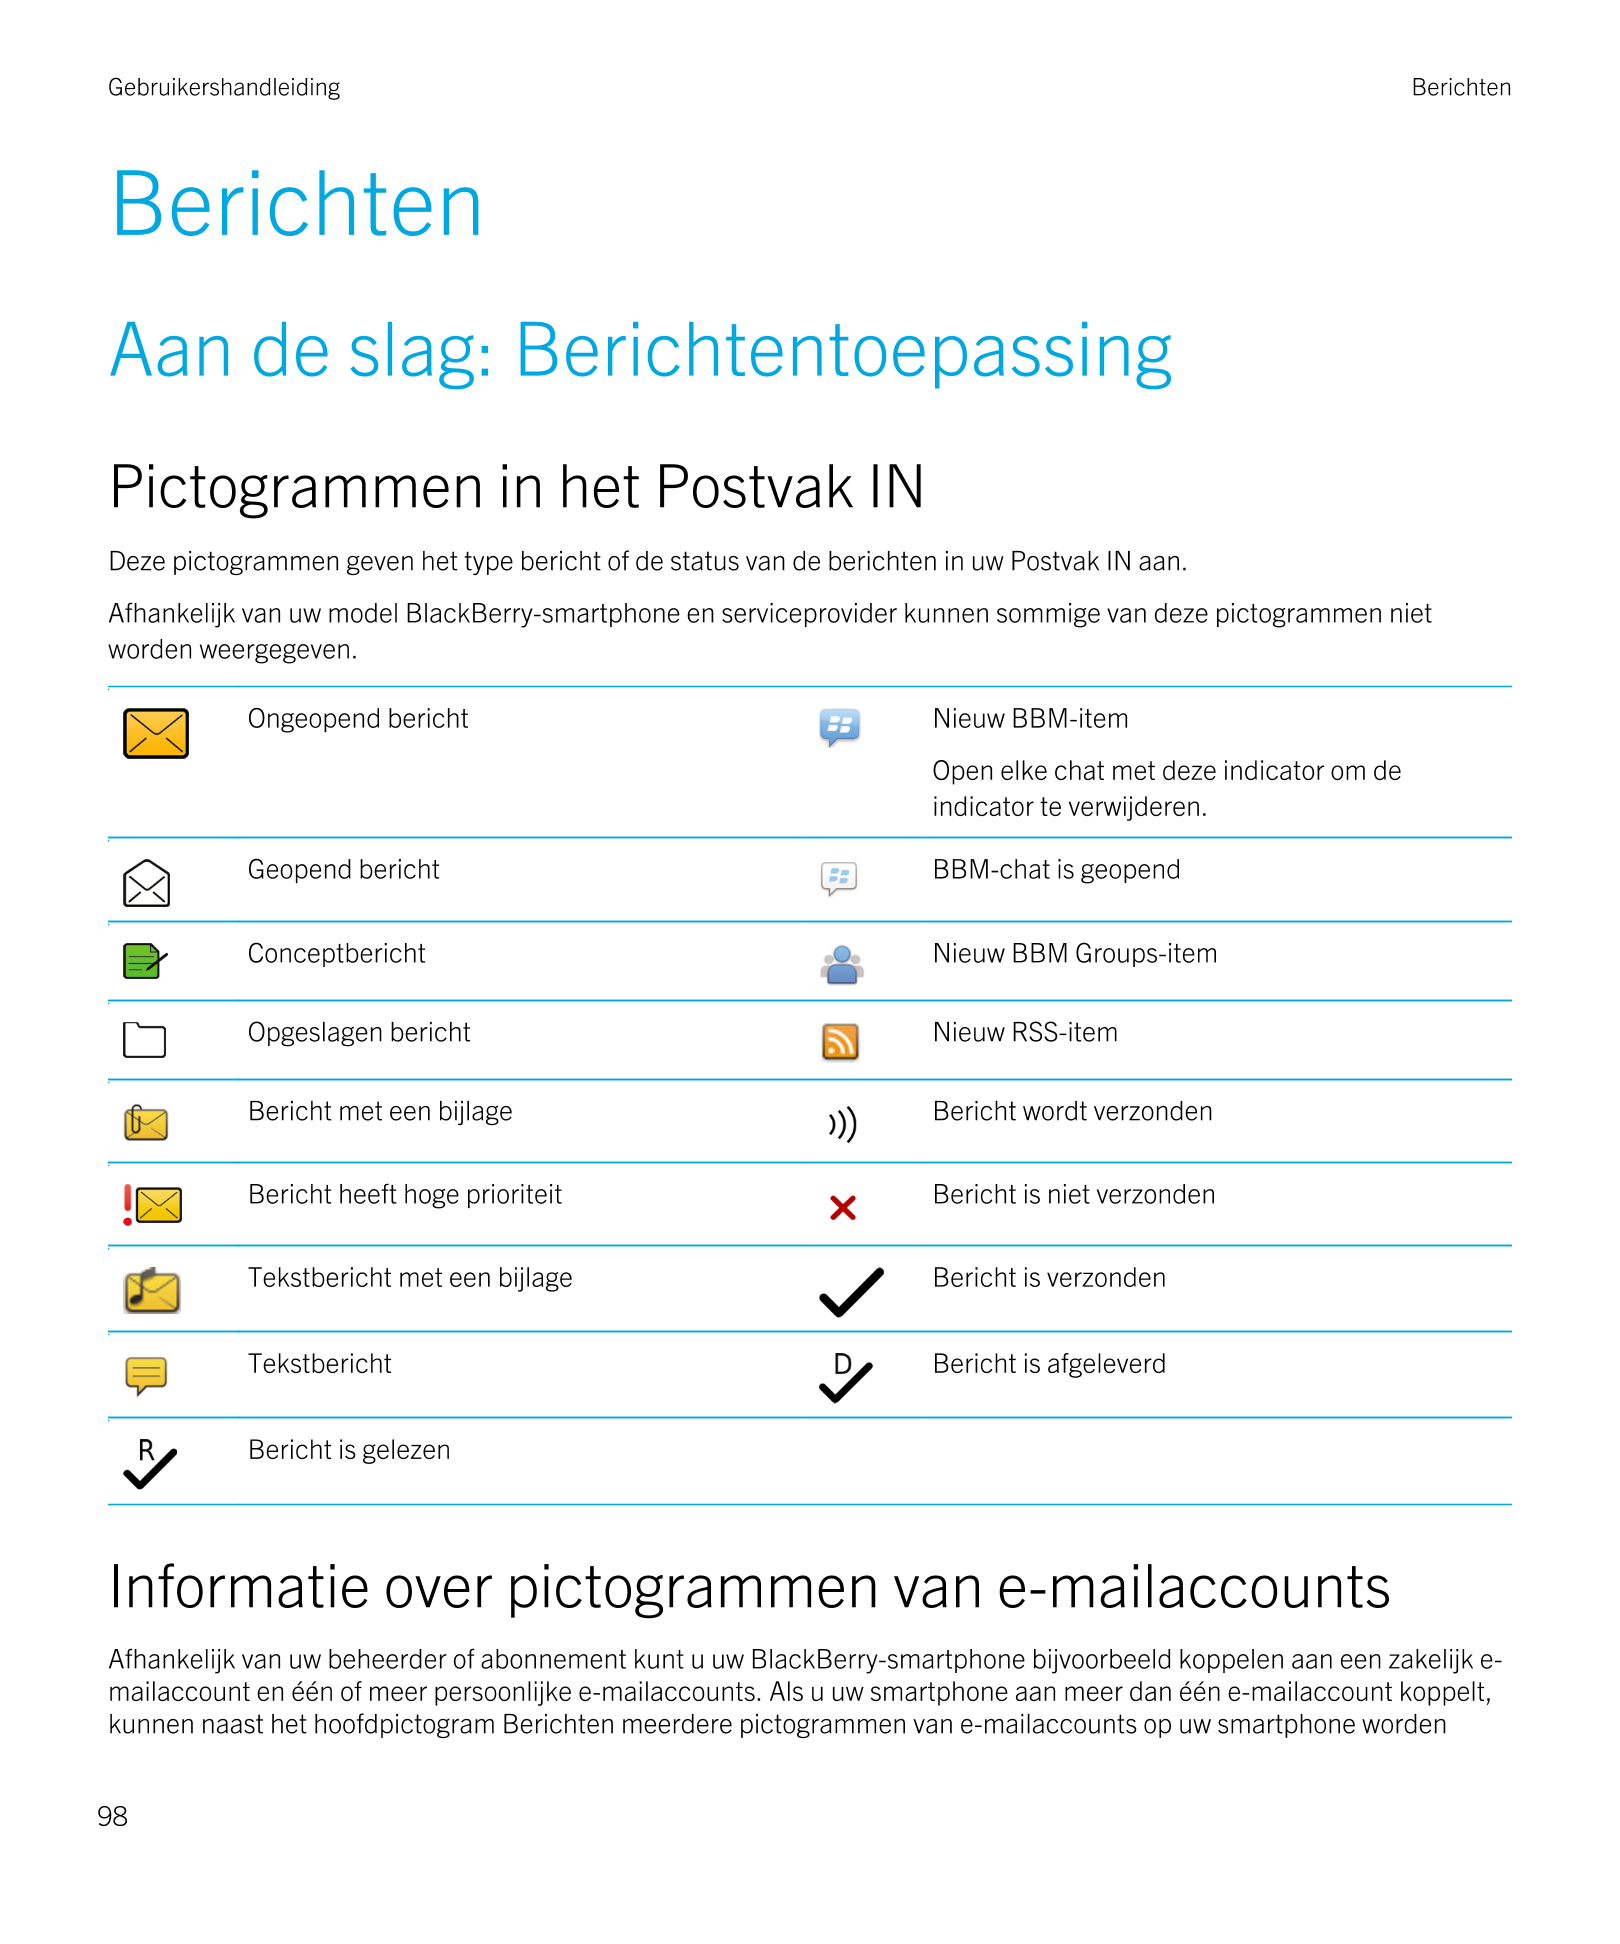 Gebruikershandleiding Berichten
Berichten
Aan de slag: Berichtentoepassing
Pictogrammen in het Postvak IN
Deze pictogrammen geve